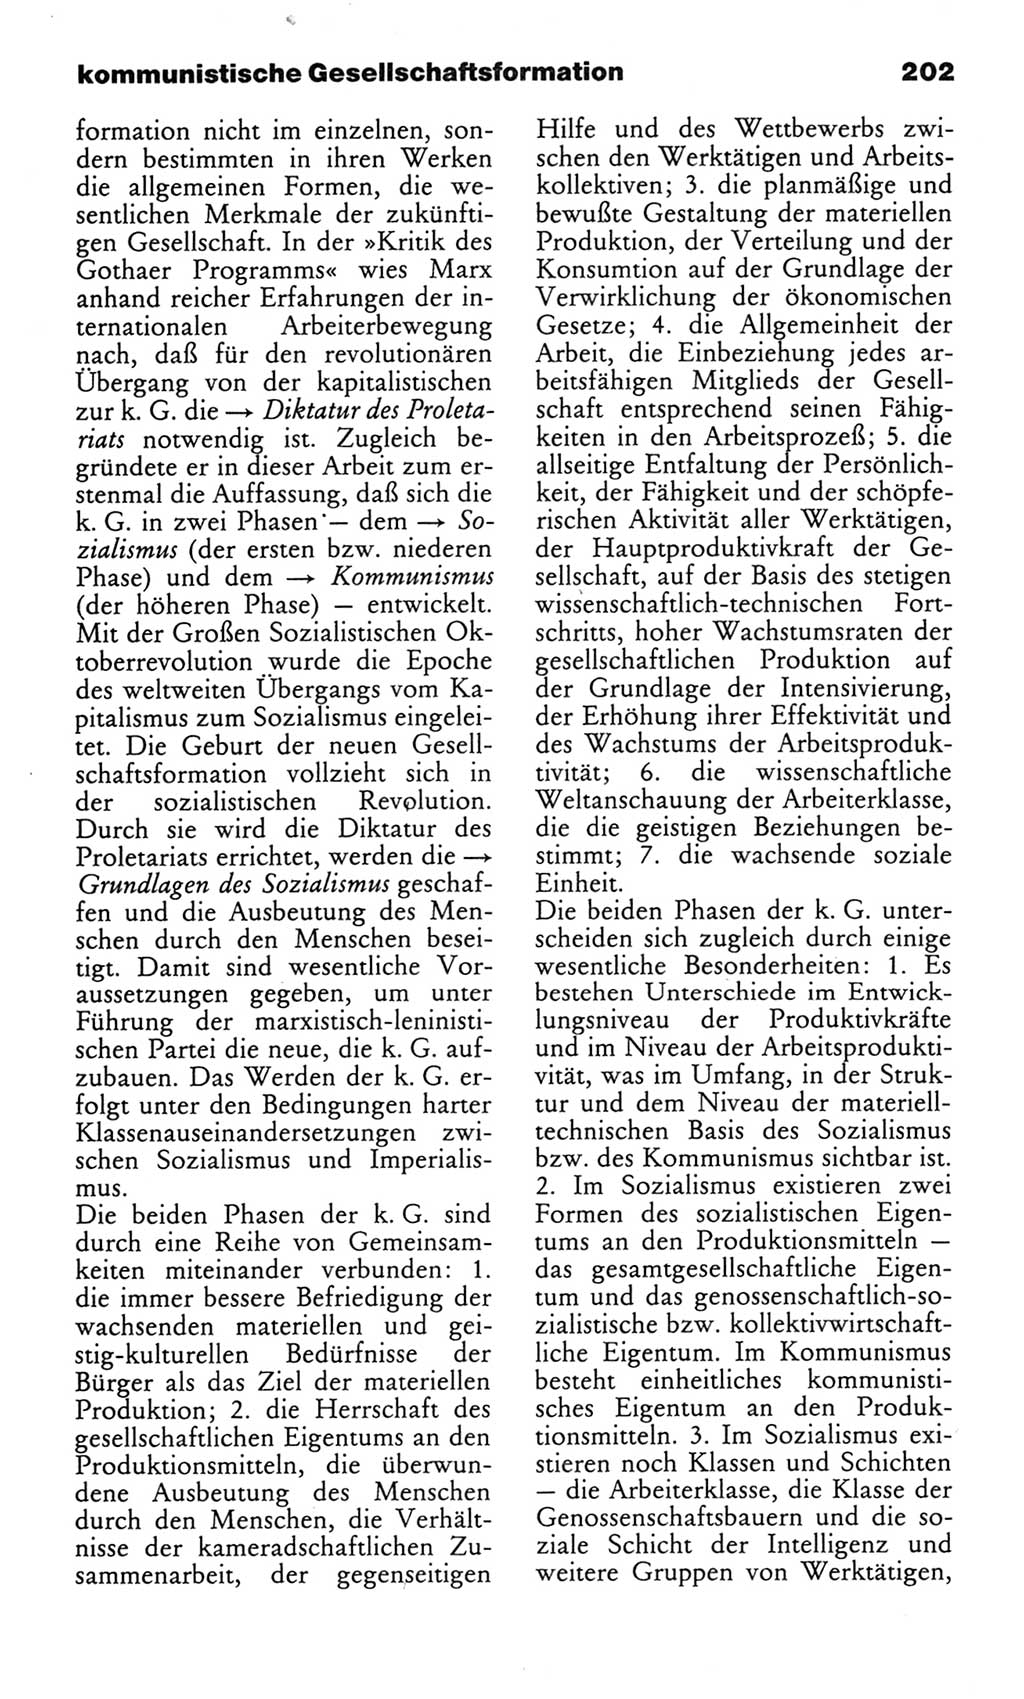 Wörterbuch des wissenschaftlichen Kommunismus [Deutsche Demokratische Republik (DDR)] 1982, Seite 202 (Wb. wiss. Komm. DDR 1982, S. 202)